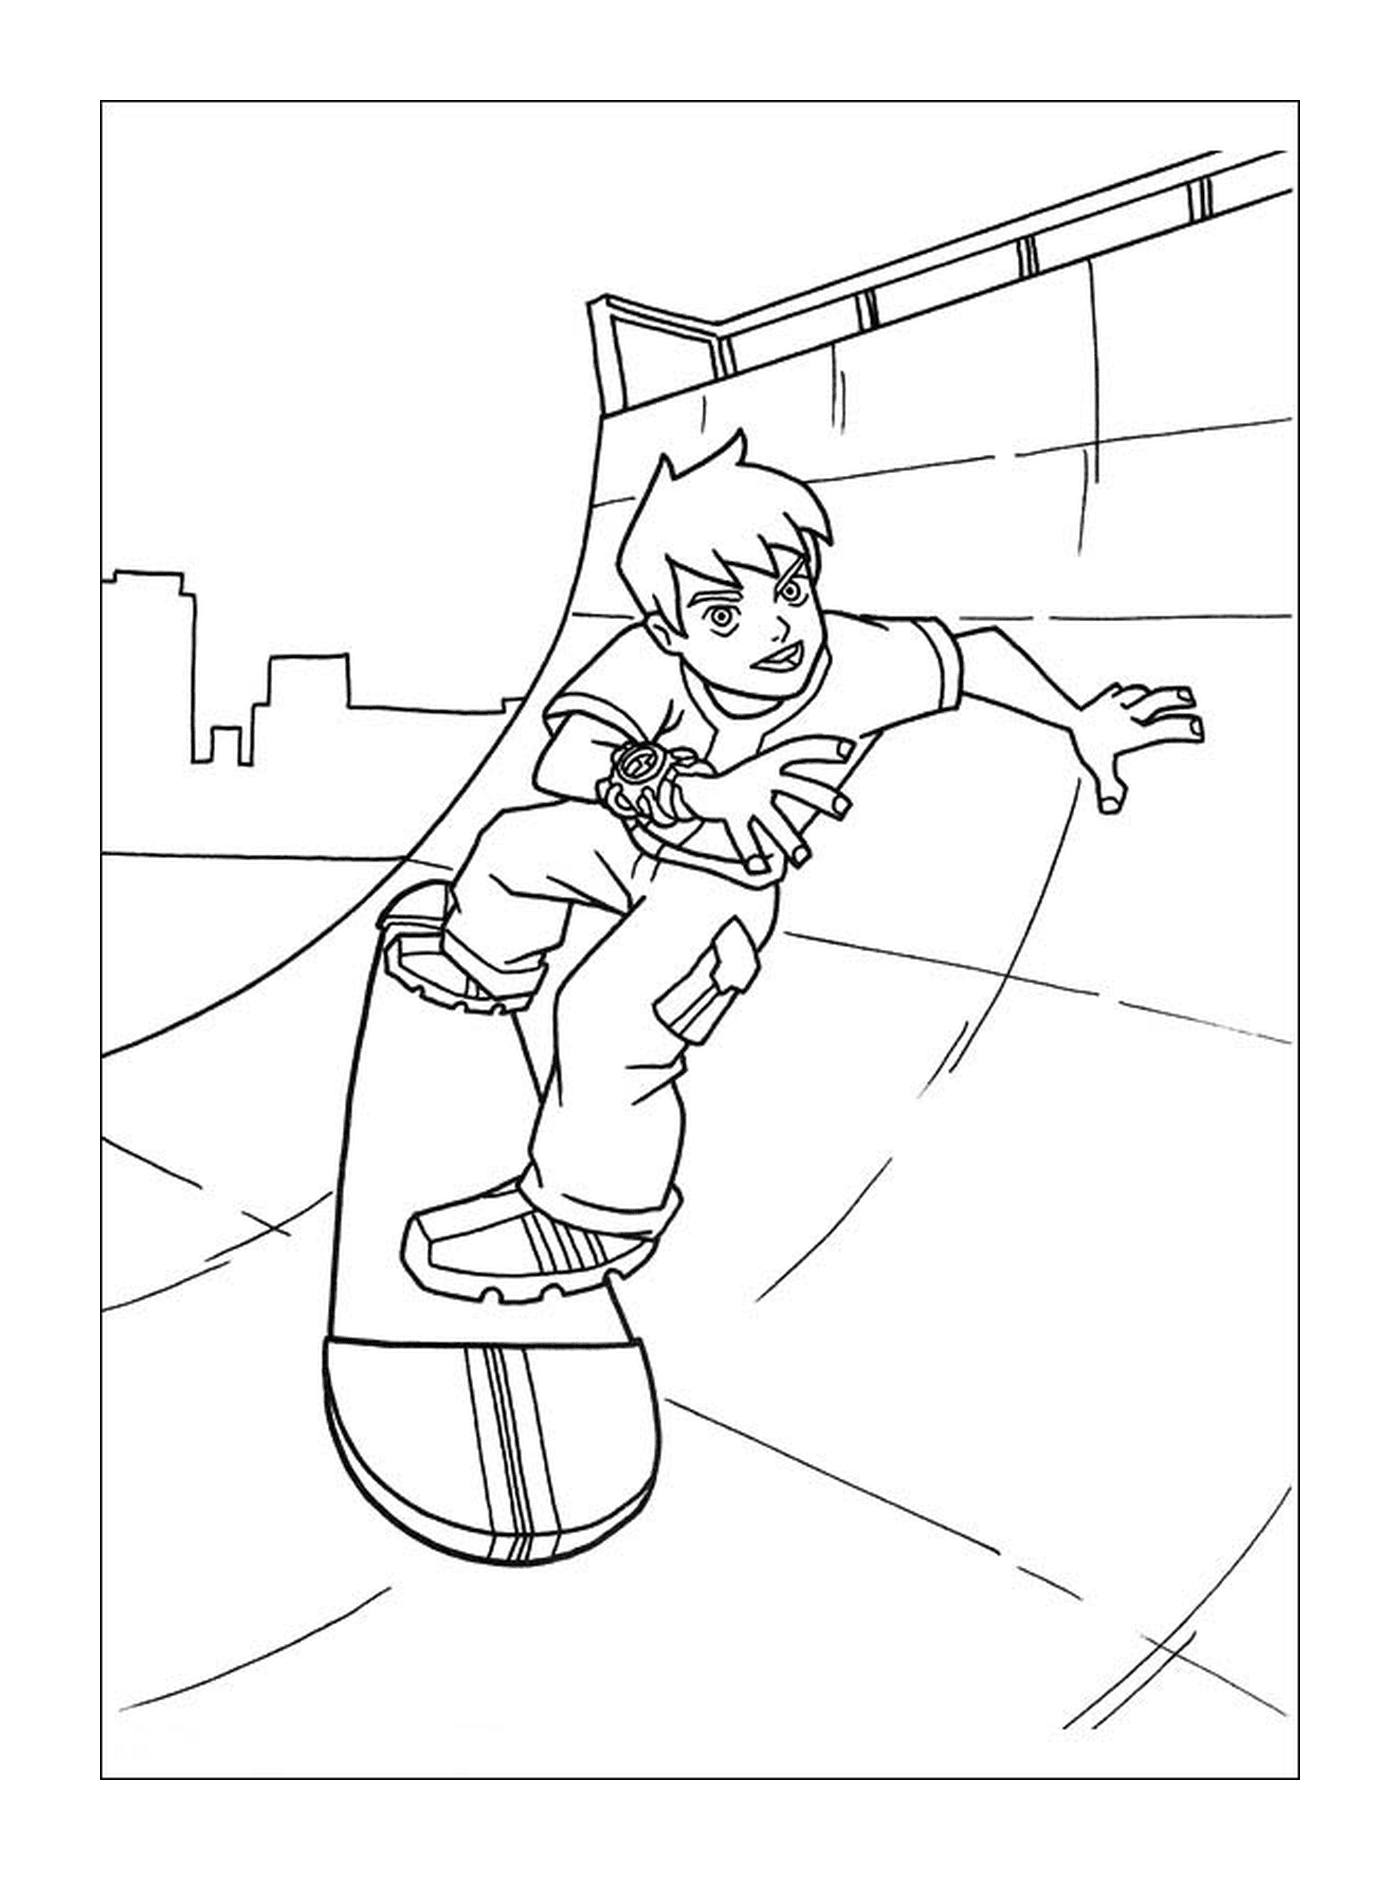  Ein Junge auf einem Skateboard 